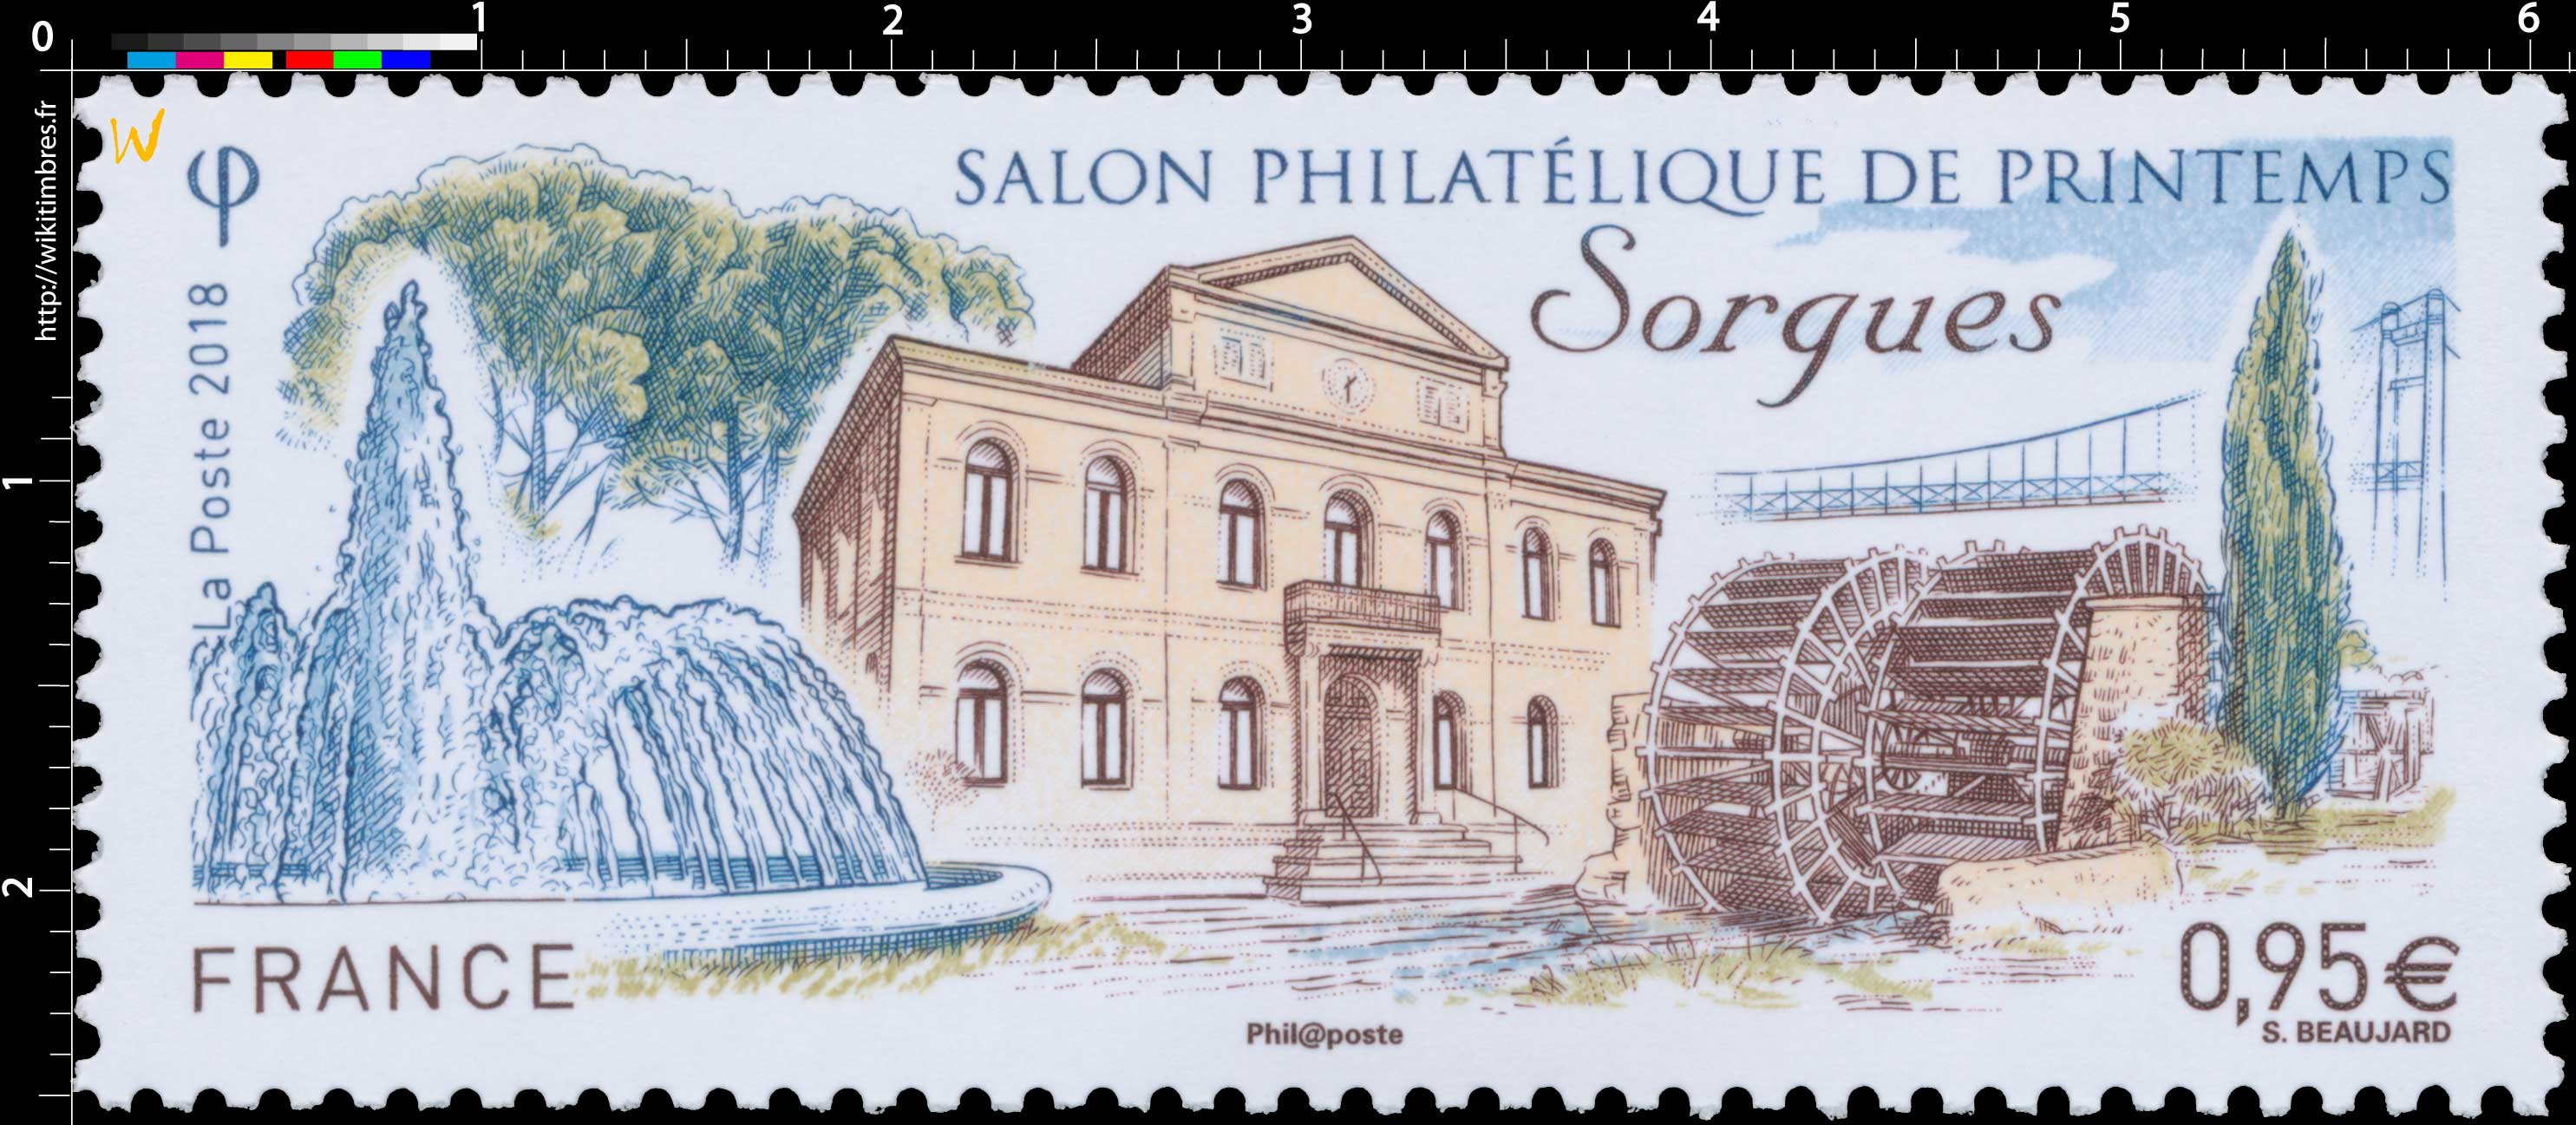 2018 Salon Philatélique de printemps Sorgues